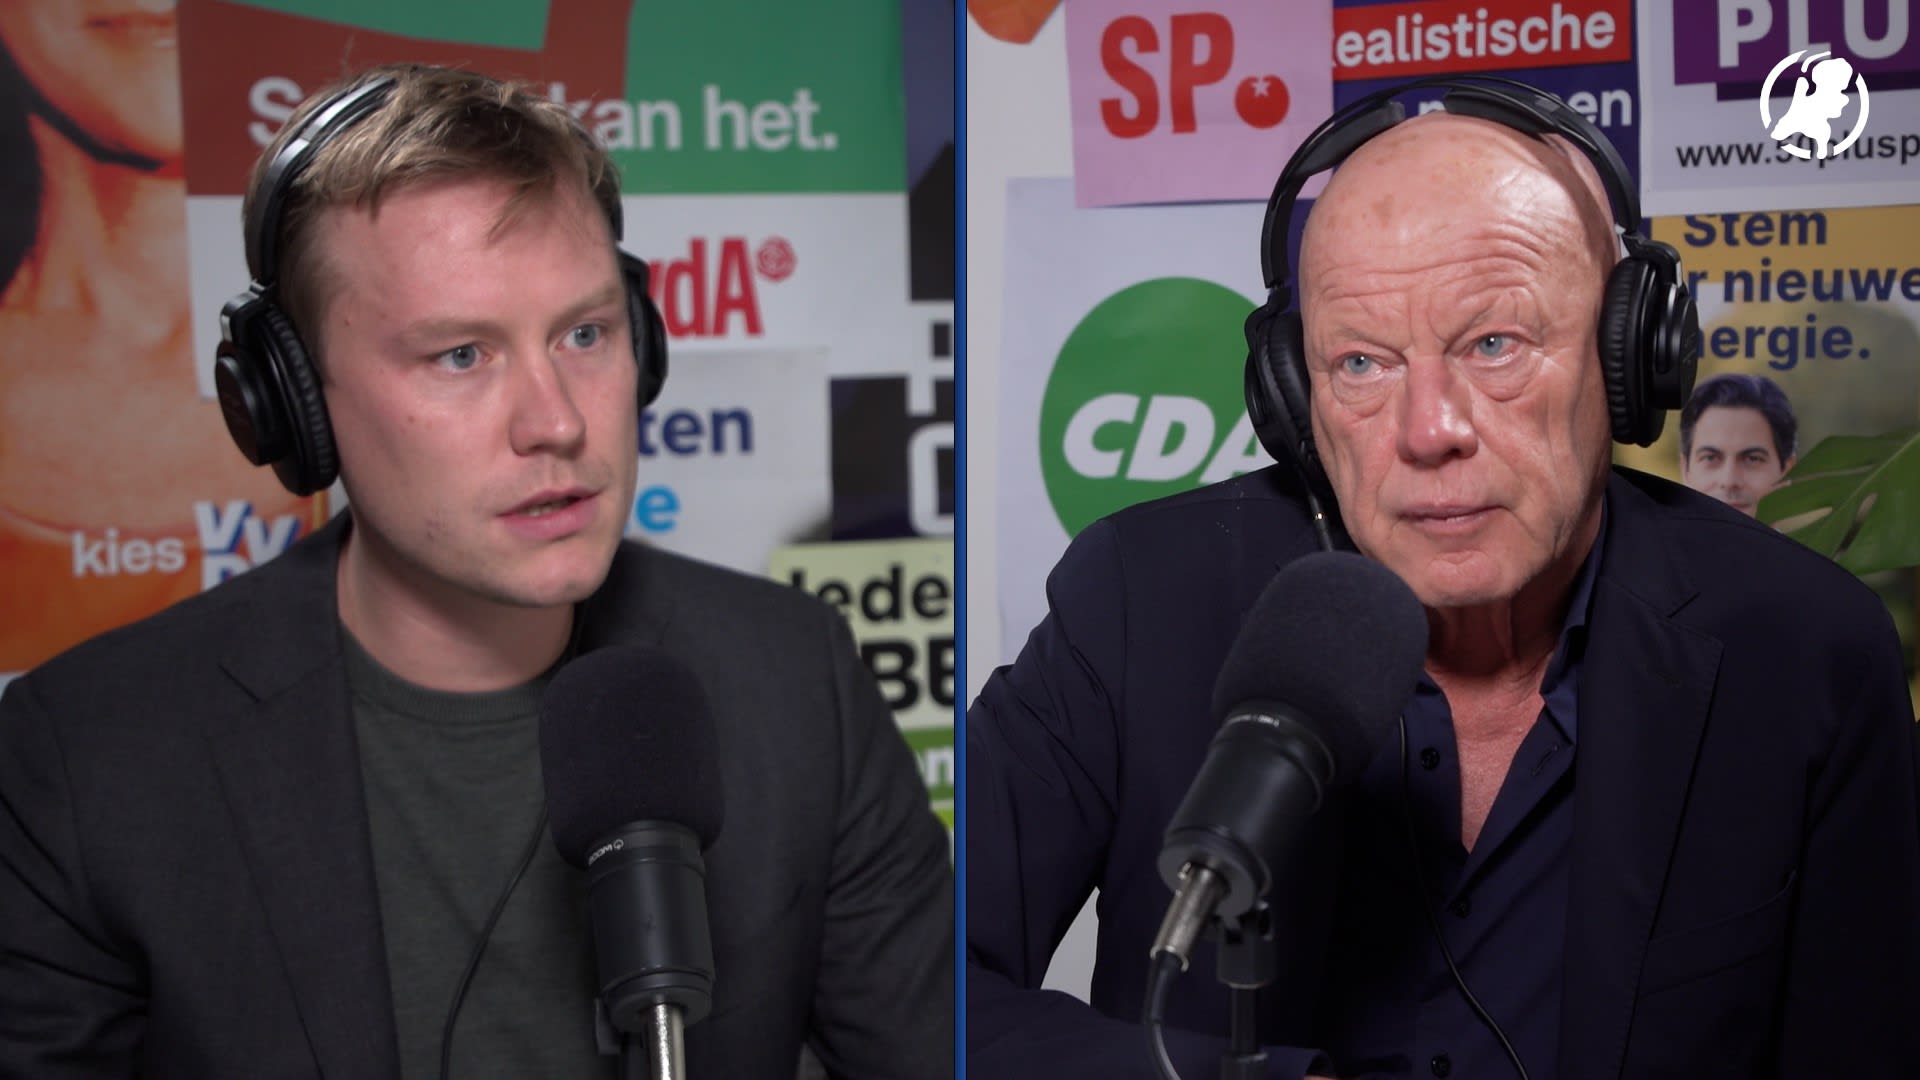 Frits Wester: 'Formerende partijen zullen veel kiezers moeten teleurstellen'